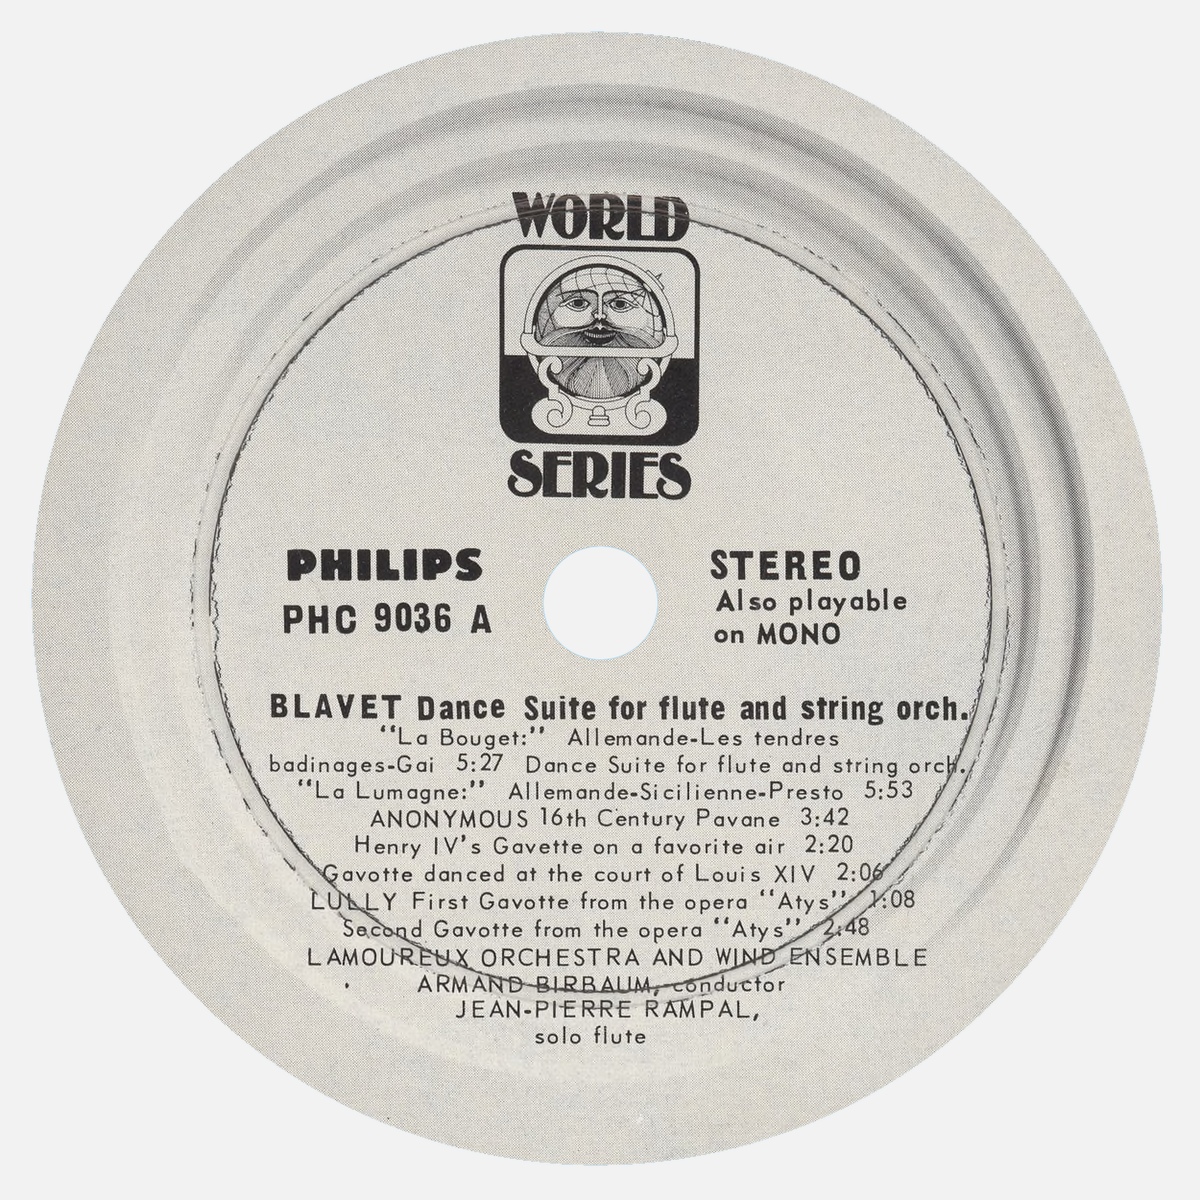 Étiquette recto du disque Philips PHC 9036